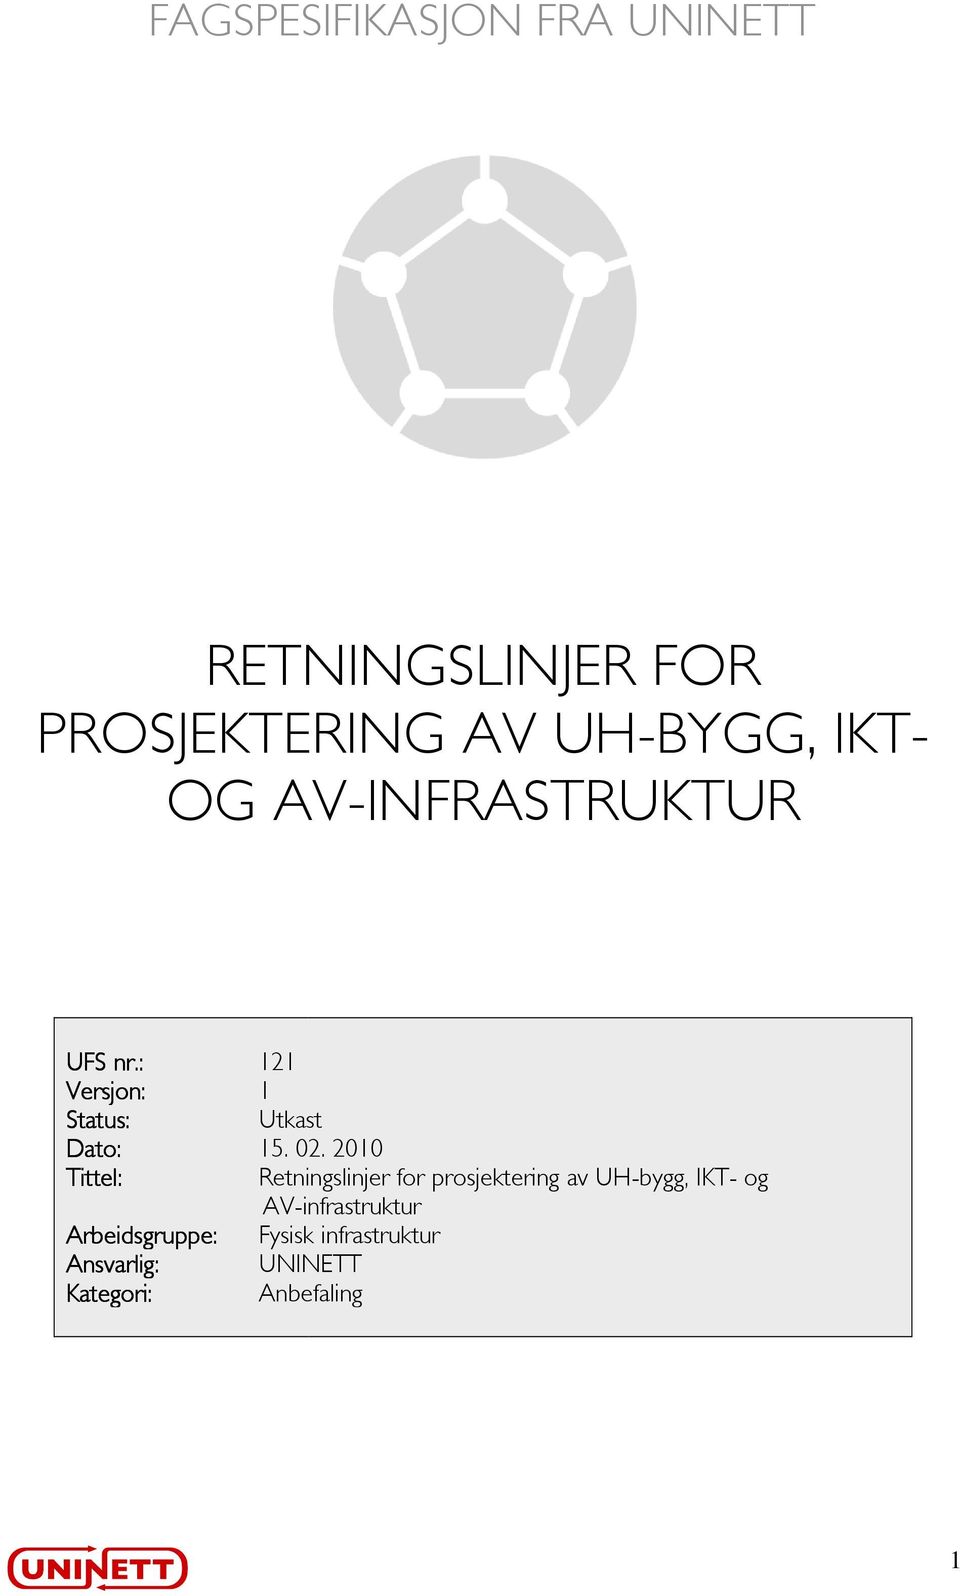 2010 Tittel: Retningslinjer for prosjektering av UH-bygg, IKT- og